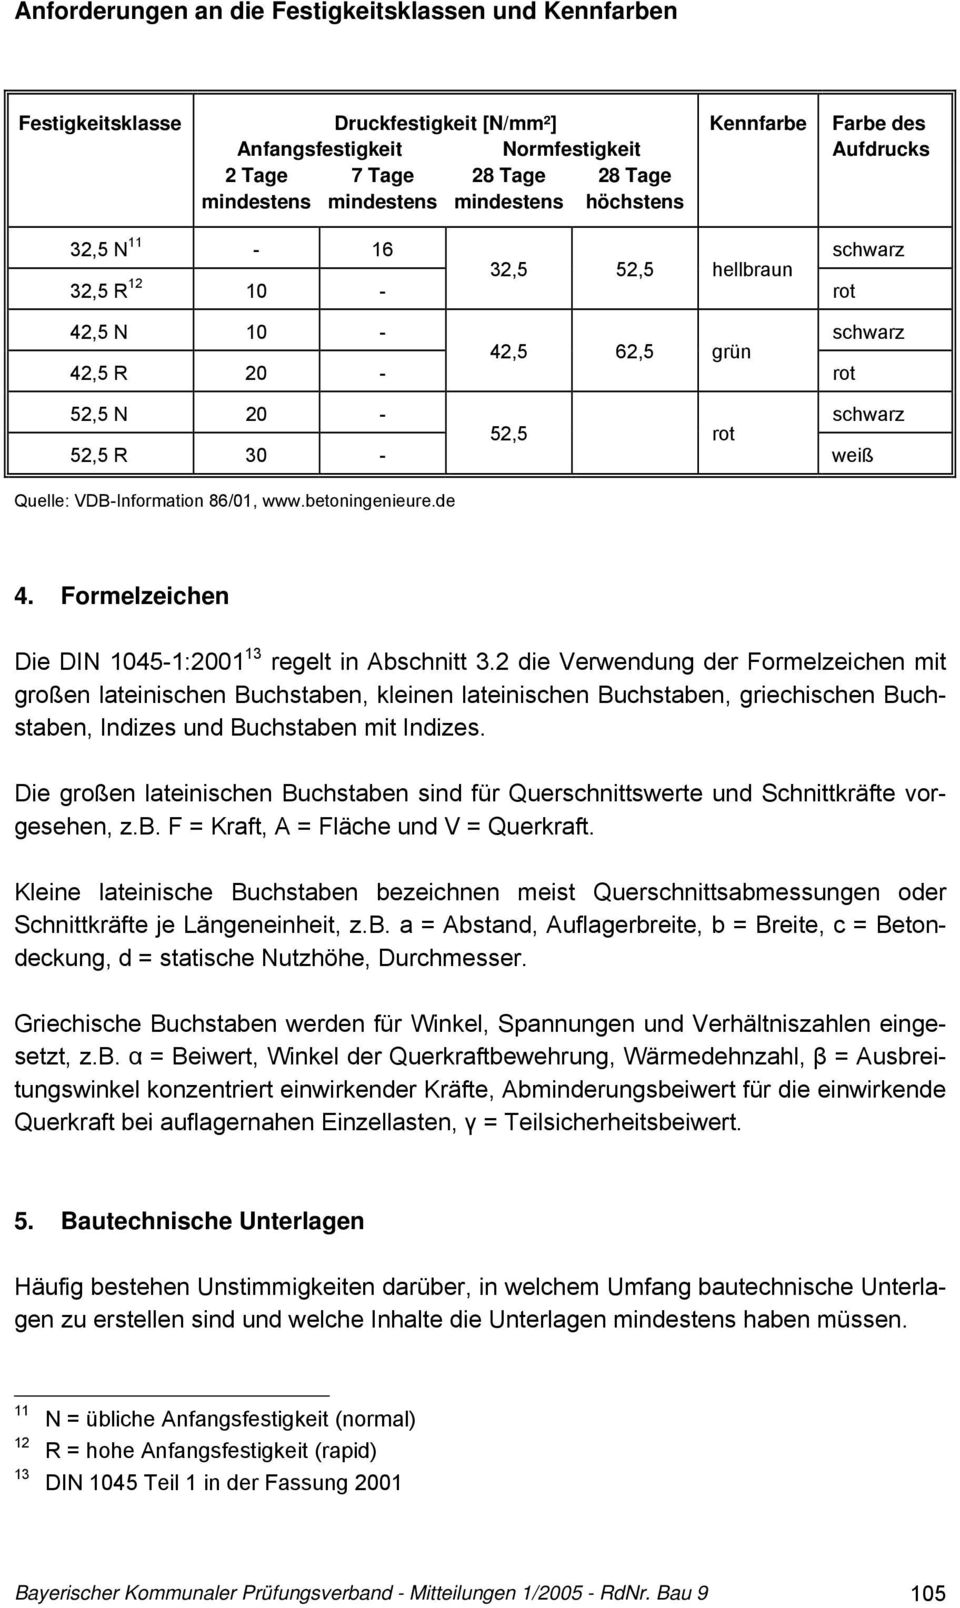 VDB-Information 86/01, www.betoningenieure.de 4. Formelzeichen Die DIN 1045-1:2001 13 regelt in Abschnitt 3.